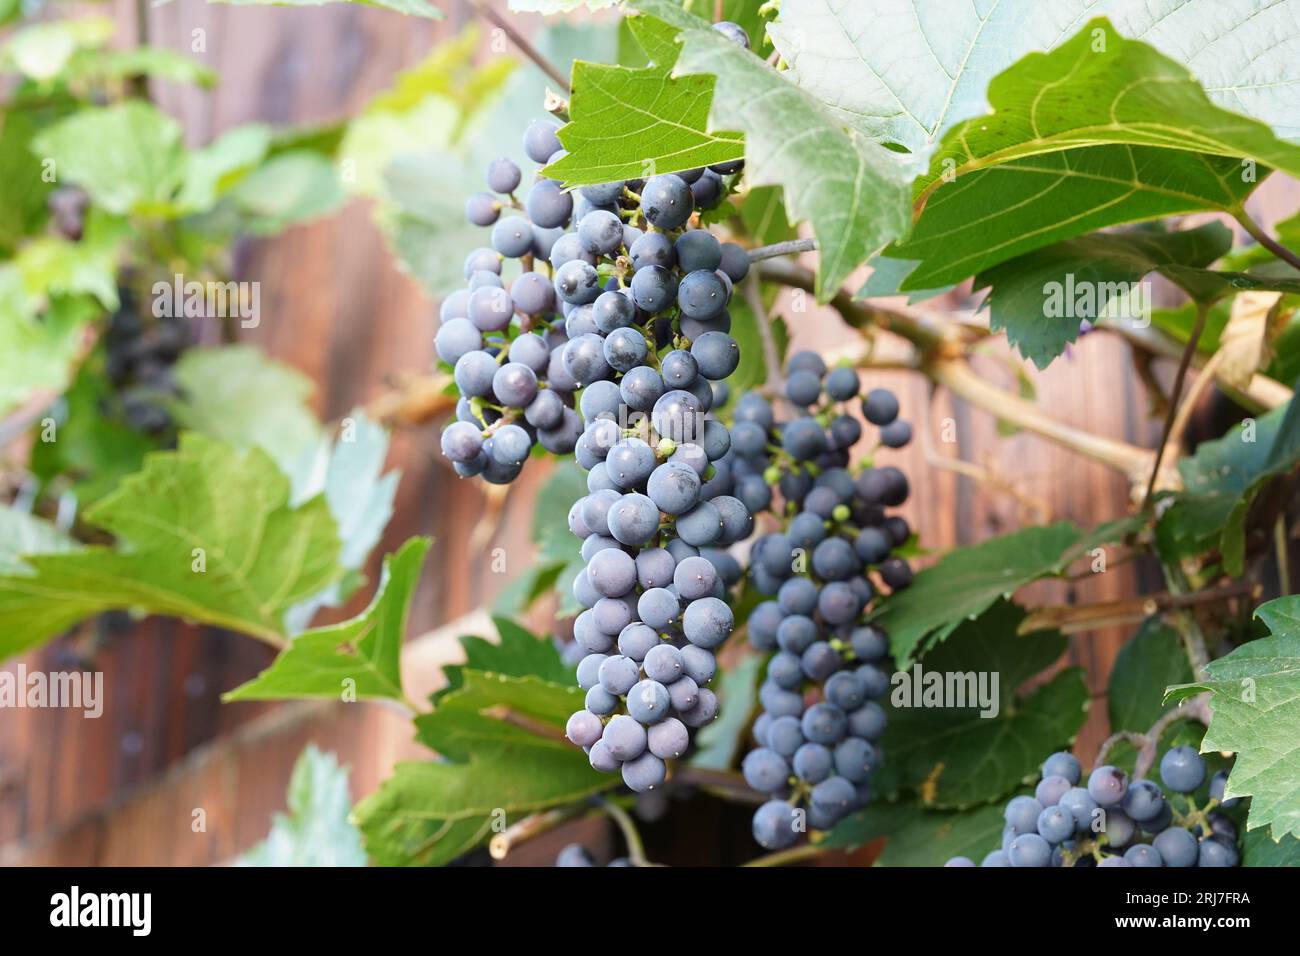 Traubengruppe aus schwarzen oder dunkelblauen Trauben, die Früchte einer Pflanze sind, die im lateinischen Vitis vinifera genannt wird, mit einigen Blättern auf dem Hintergrund. Stockfoto